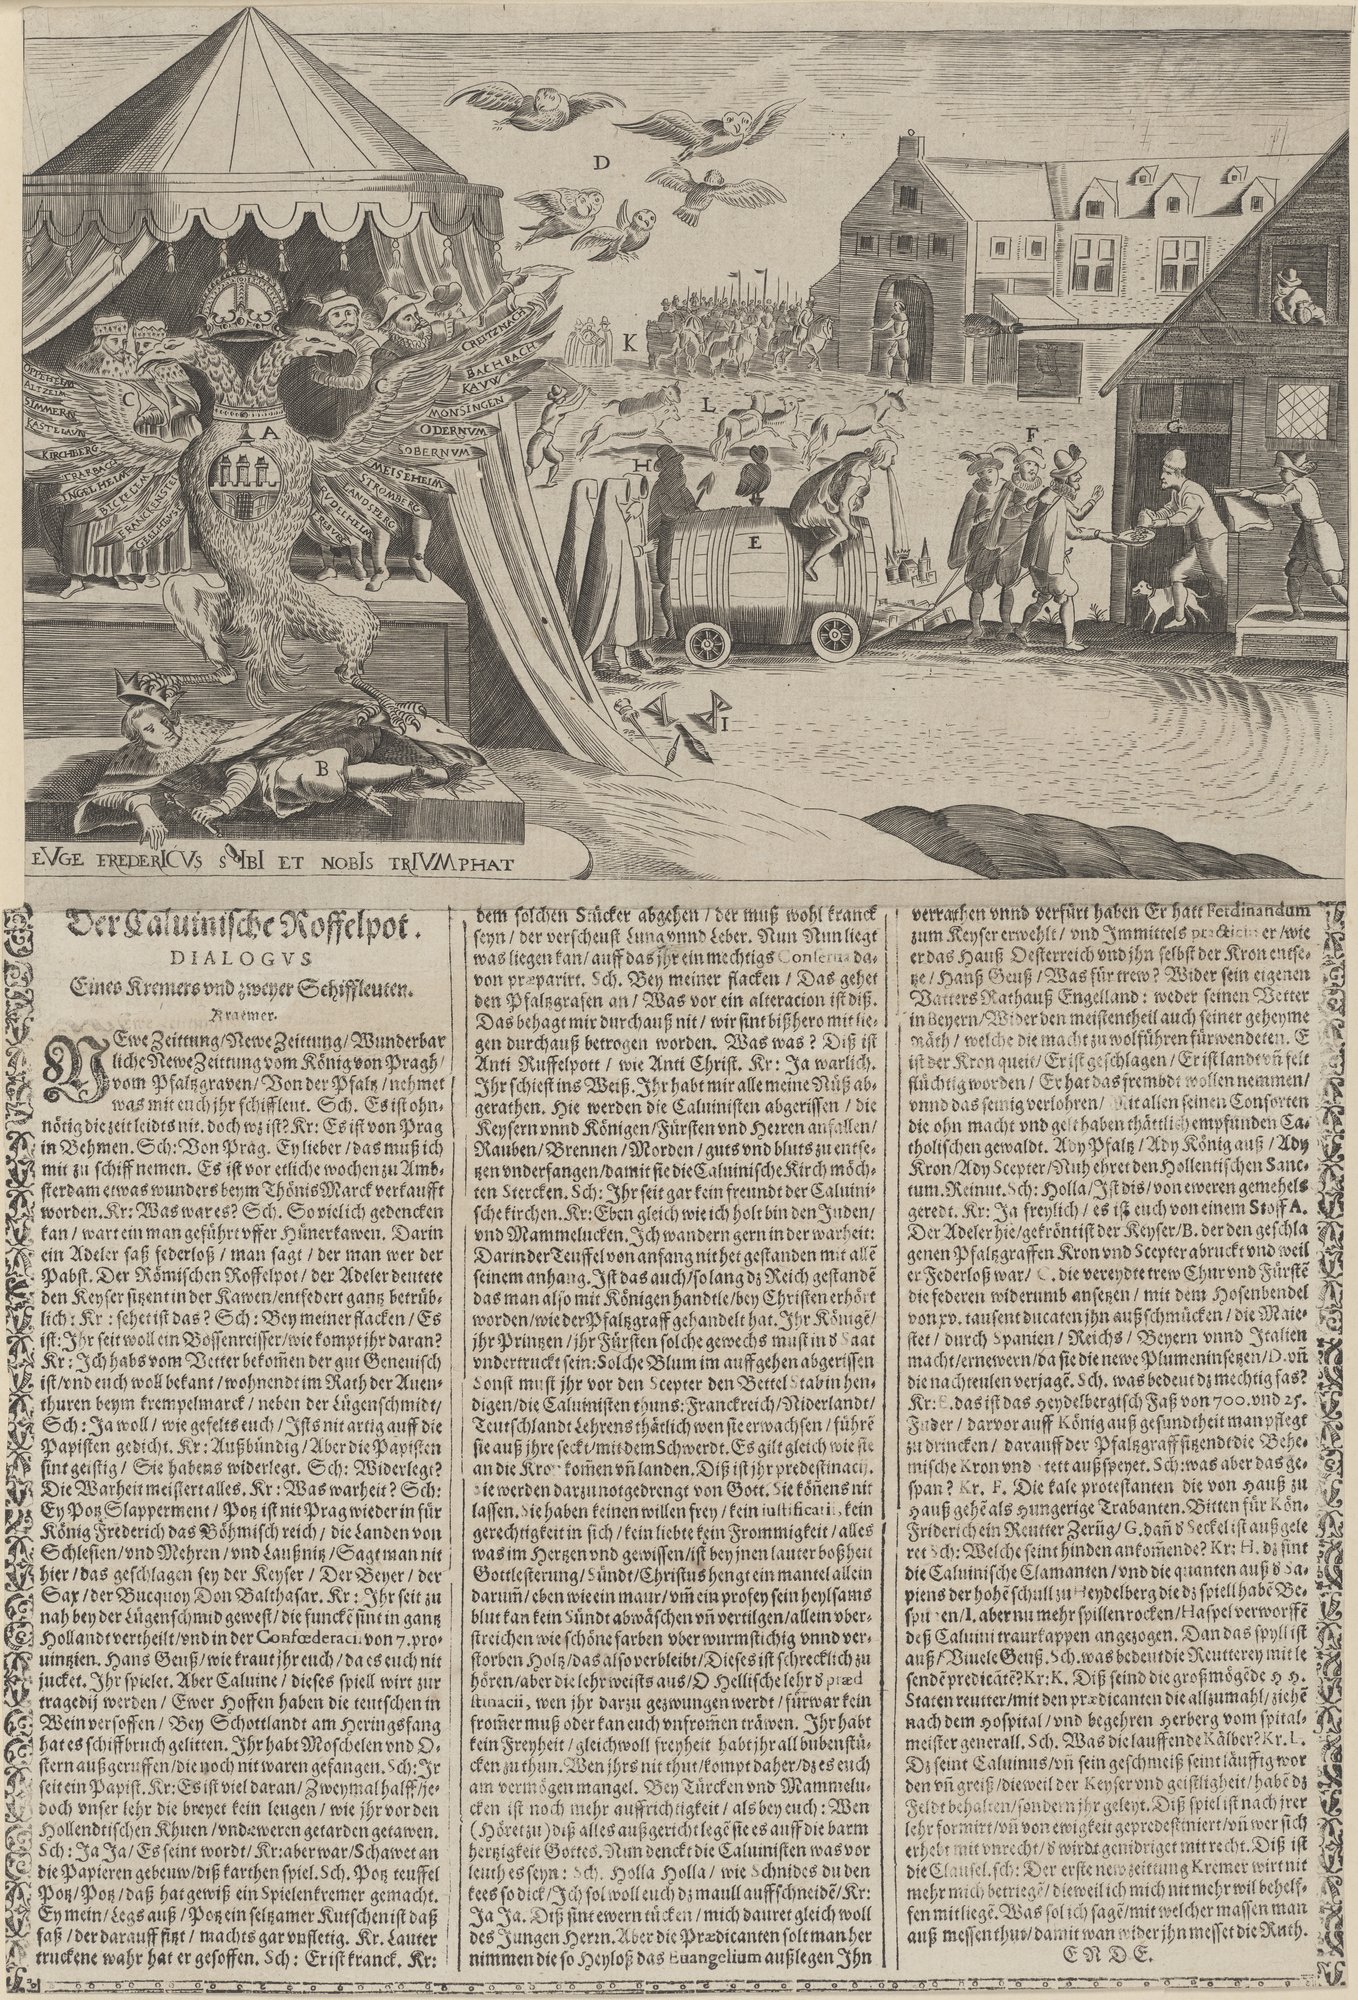 Der Calvinische Roffelpot./ DIALOGUS/ Eines Kremers und zweyer Schiffleuten. (Kulturstiftung Sachsen-Anhalt Public Domain Mark)